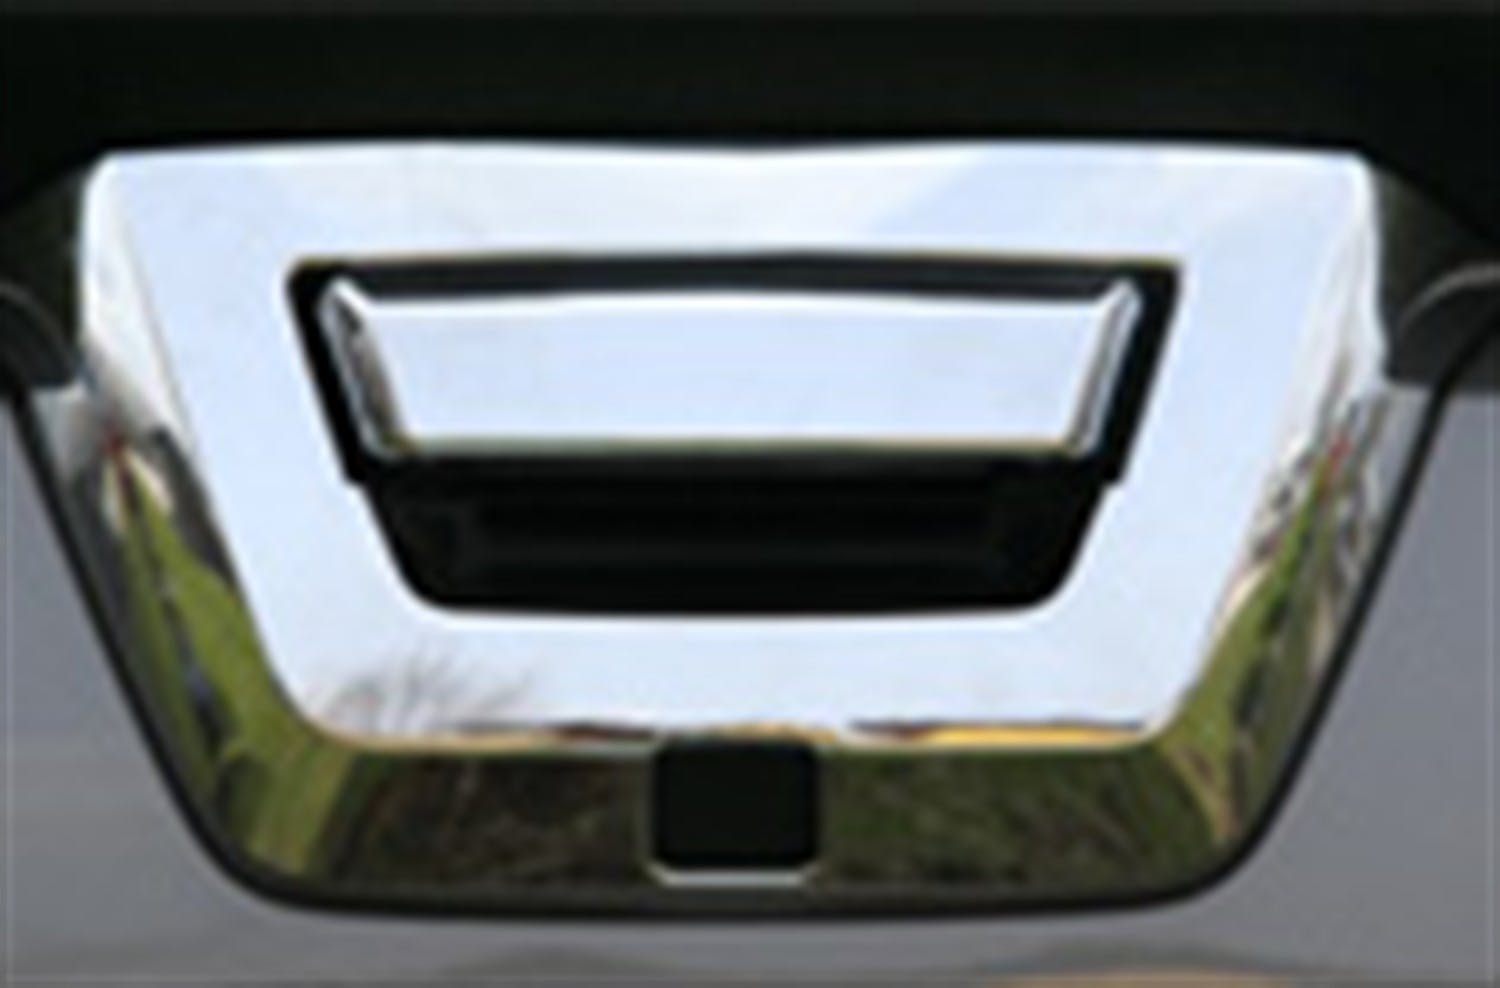 Putco 401406 Tailgate Handle Cover